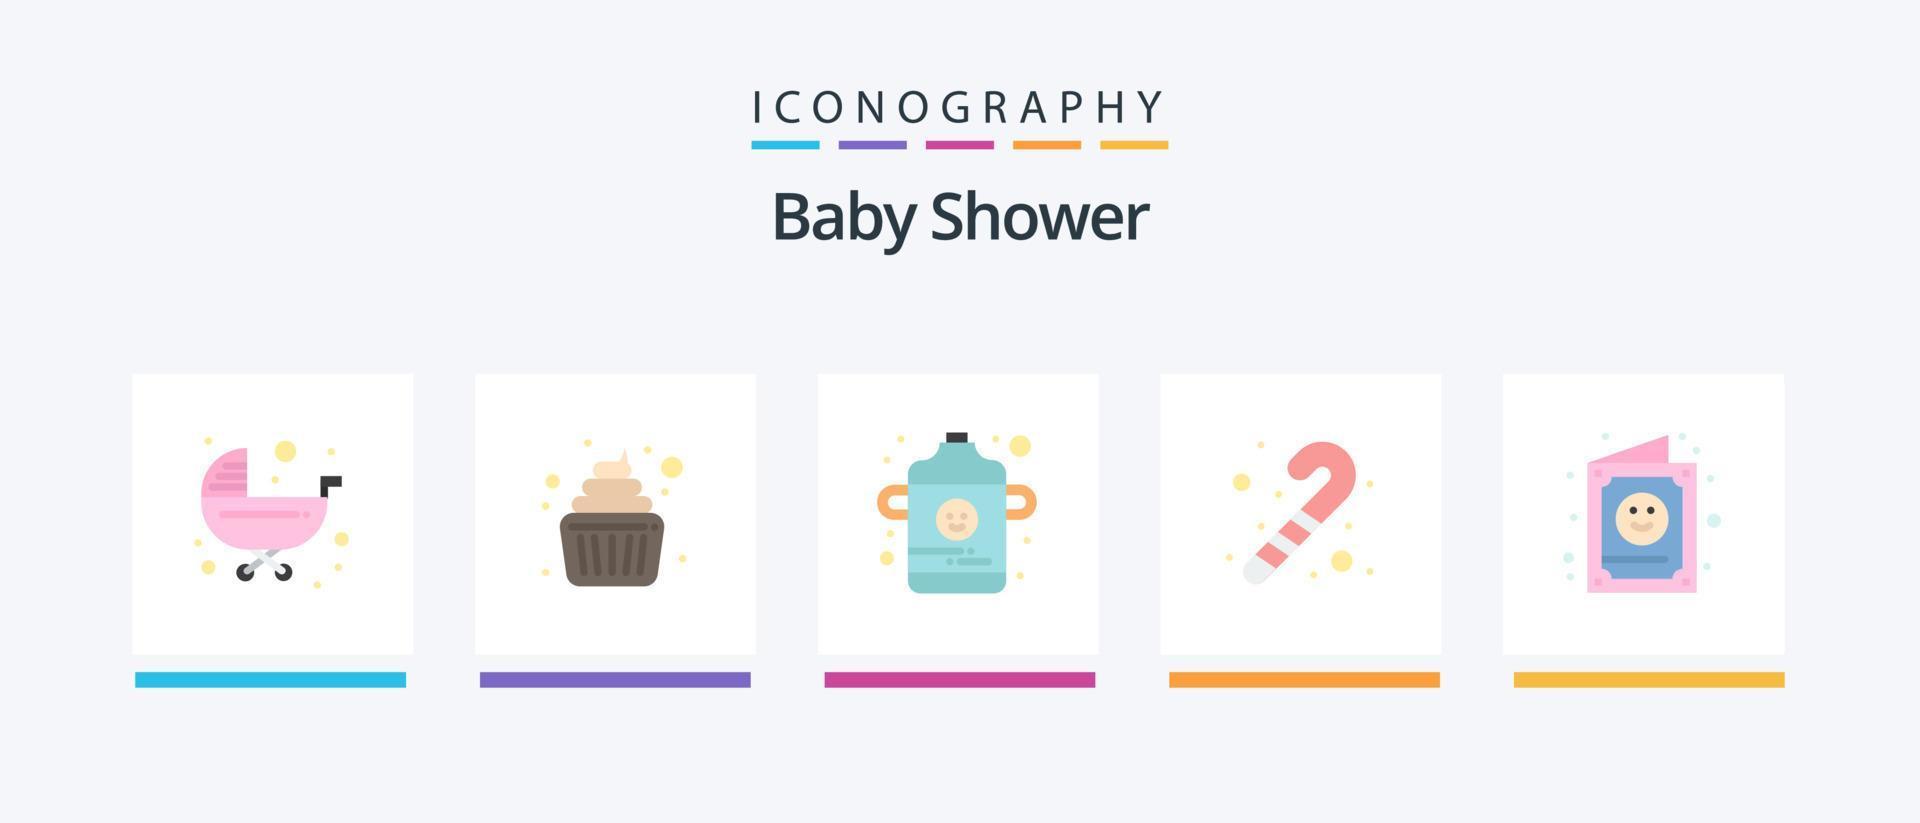 bebis dusch platt 5 ikon packa Inklusive söt. kort. unge. bebis. godis sockerrör. kreativ ikoner design vektor